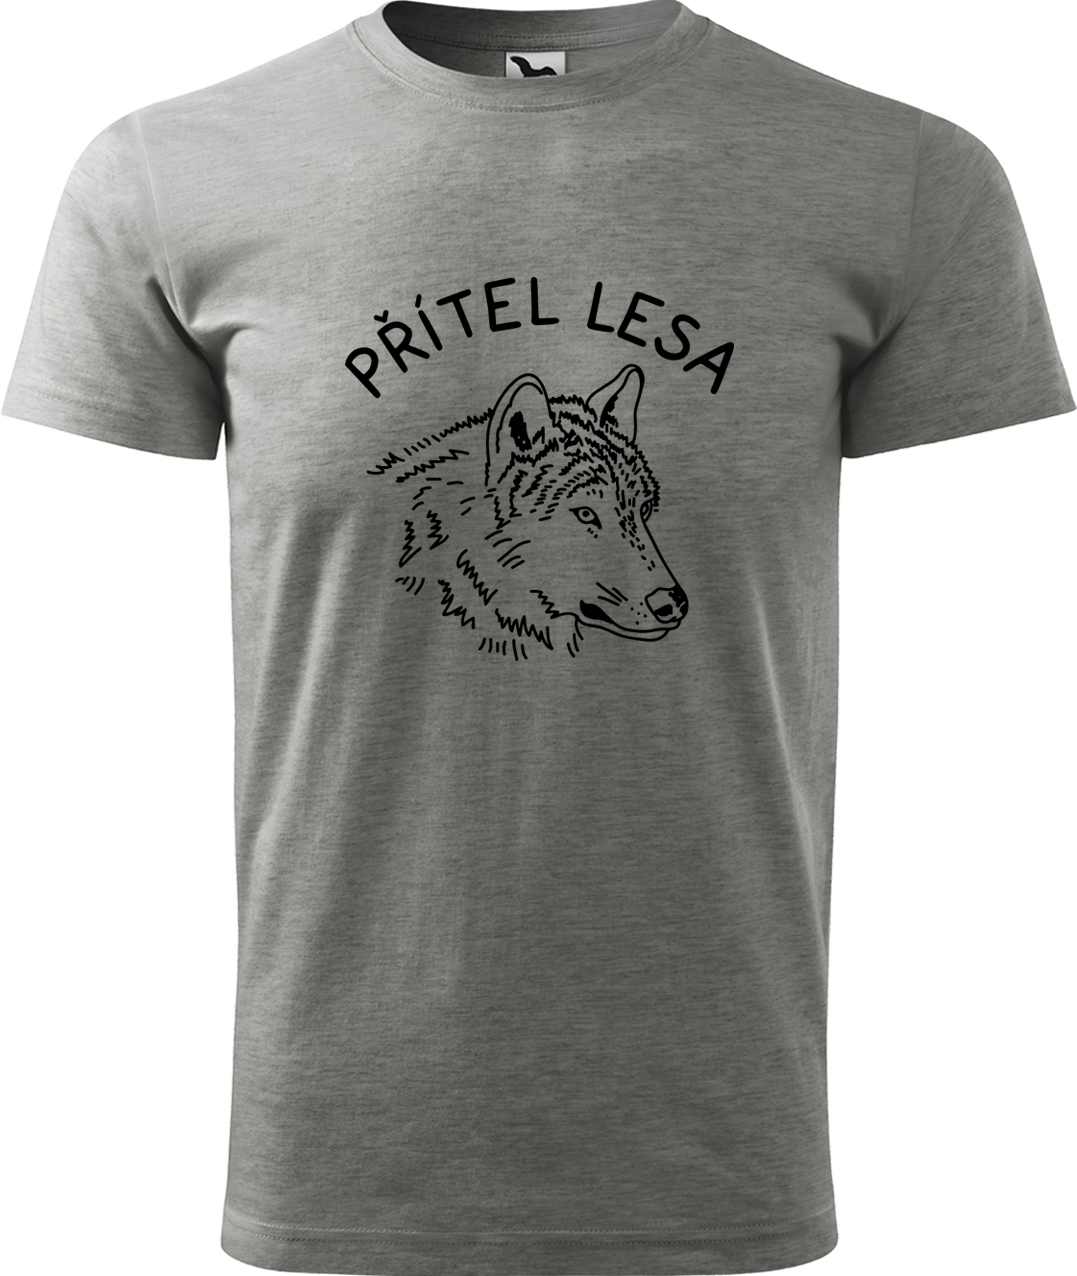 Pánské tričko s vlkem - Přítel lesa Velikost: 2XL, Barva: Tmavě šedý melír (12), Střih: pánský